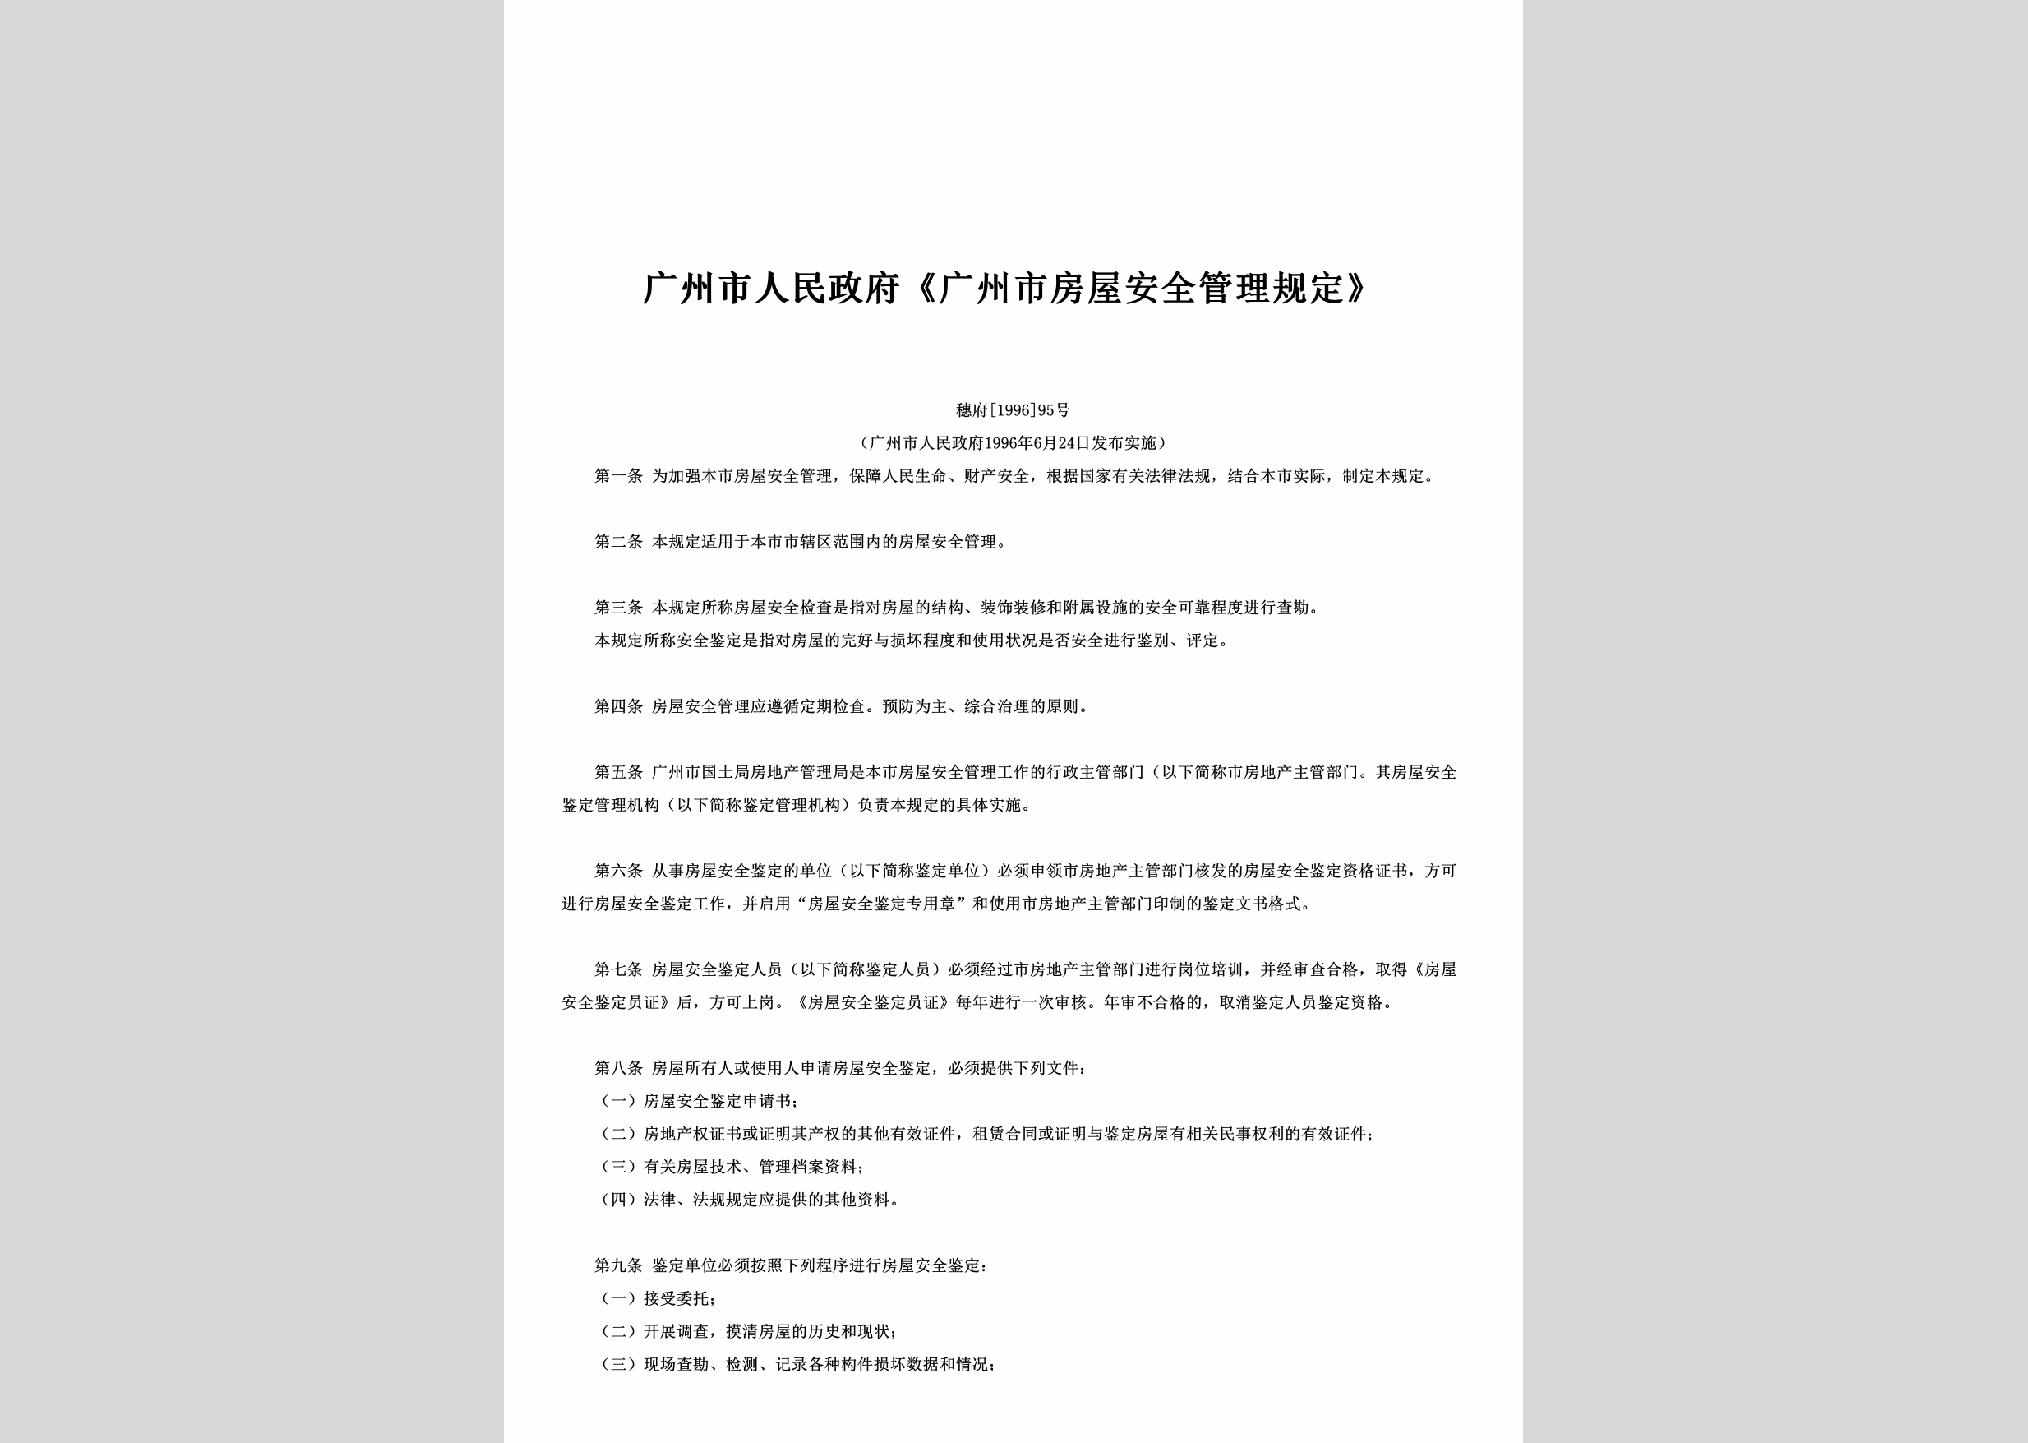 穗府[1996]95号：《广州市房屋安全管理规定》